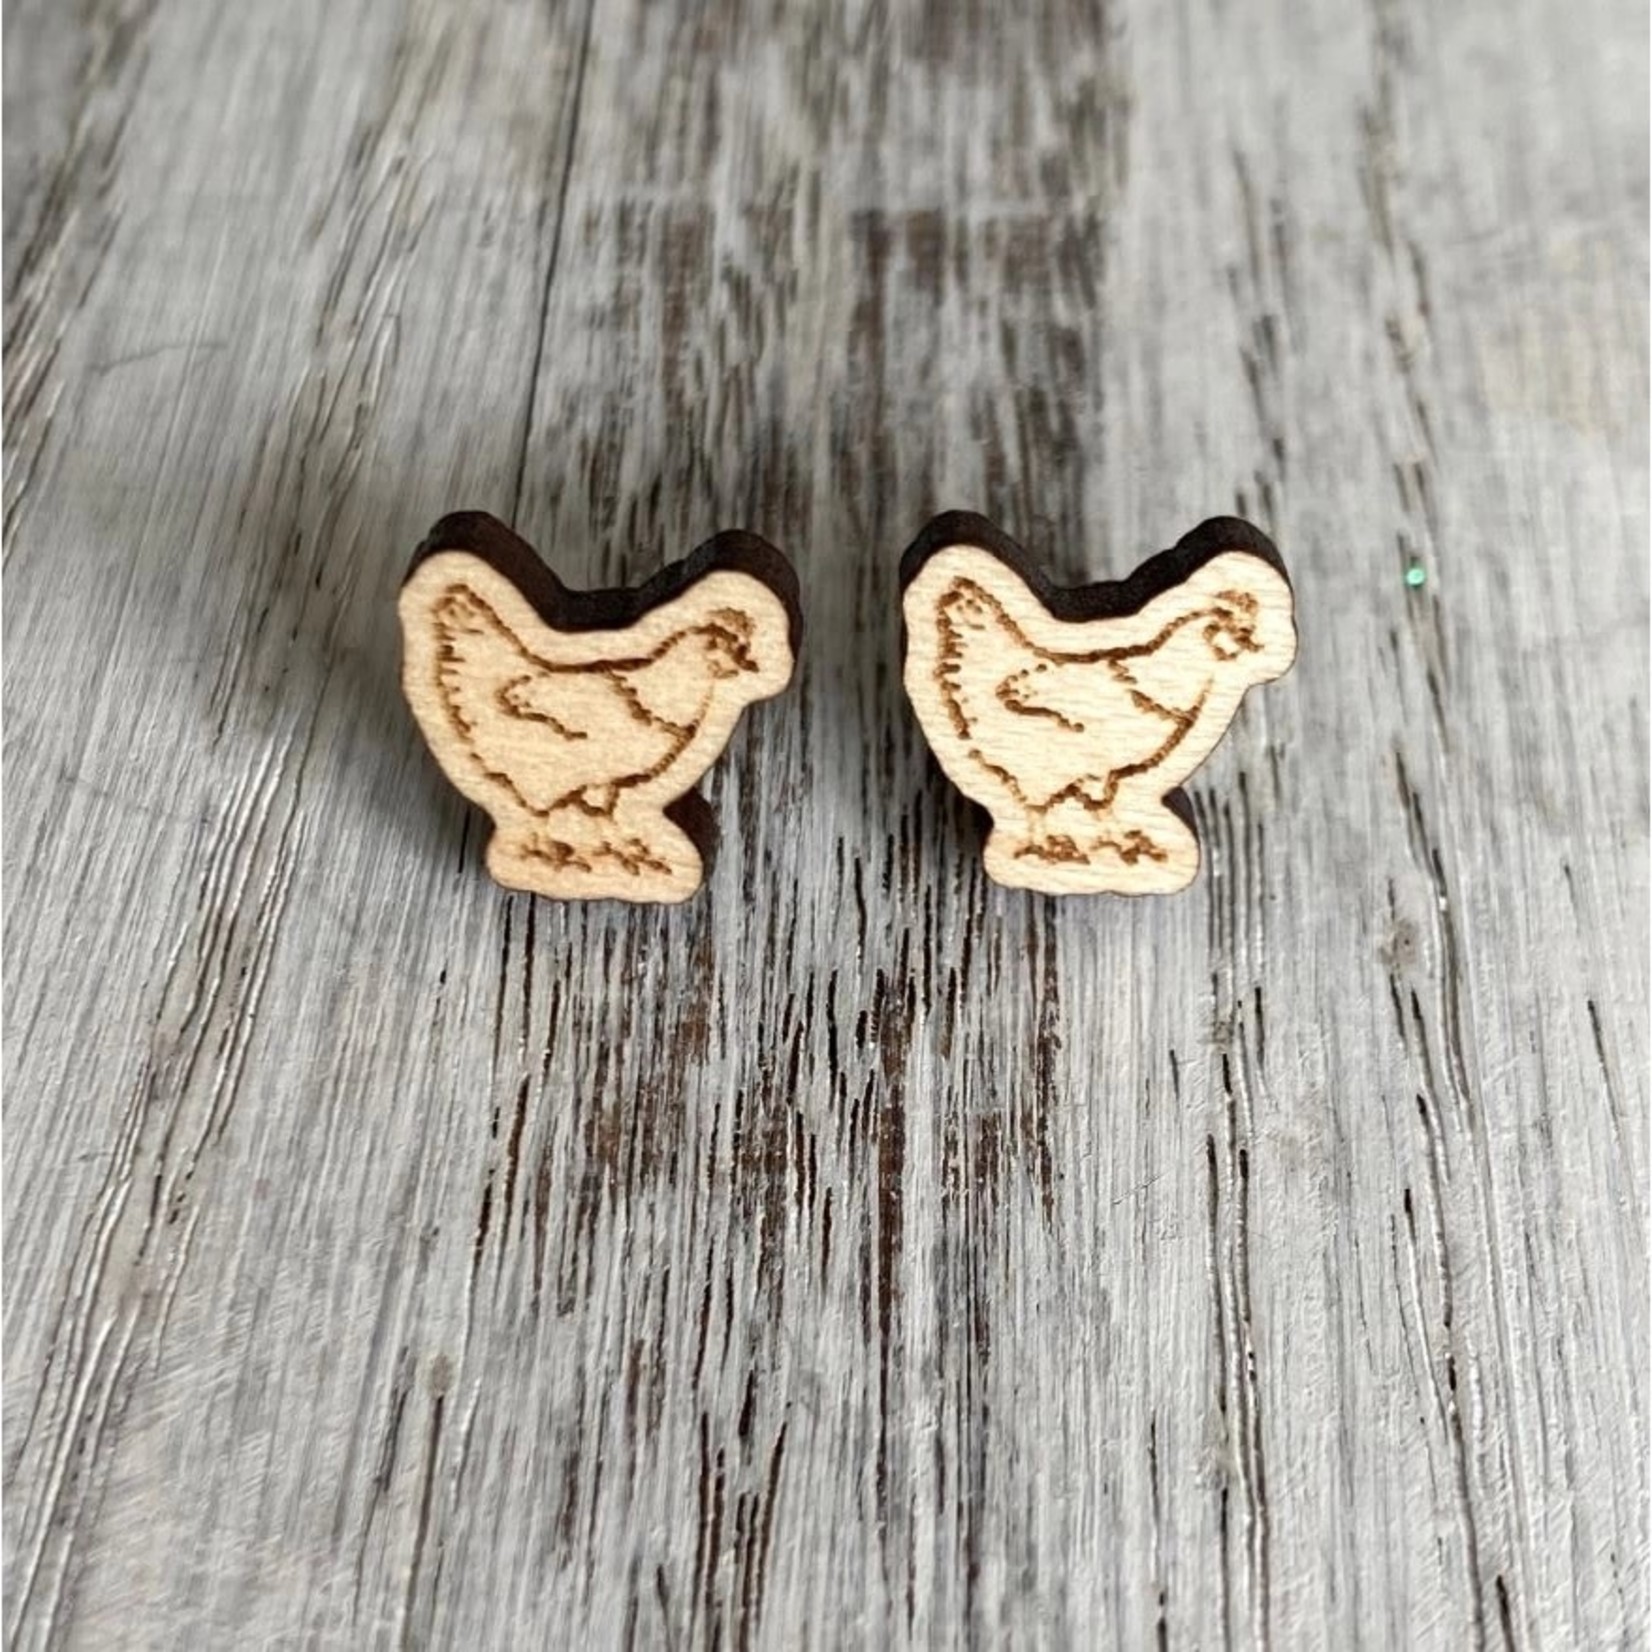 Chicken Stud Earrings